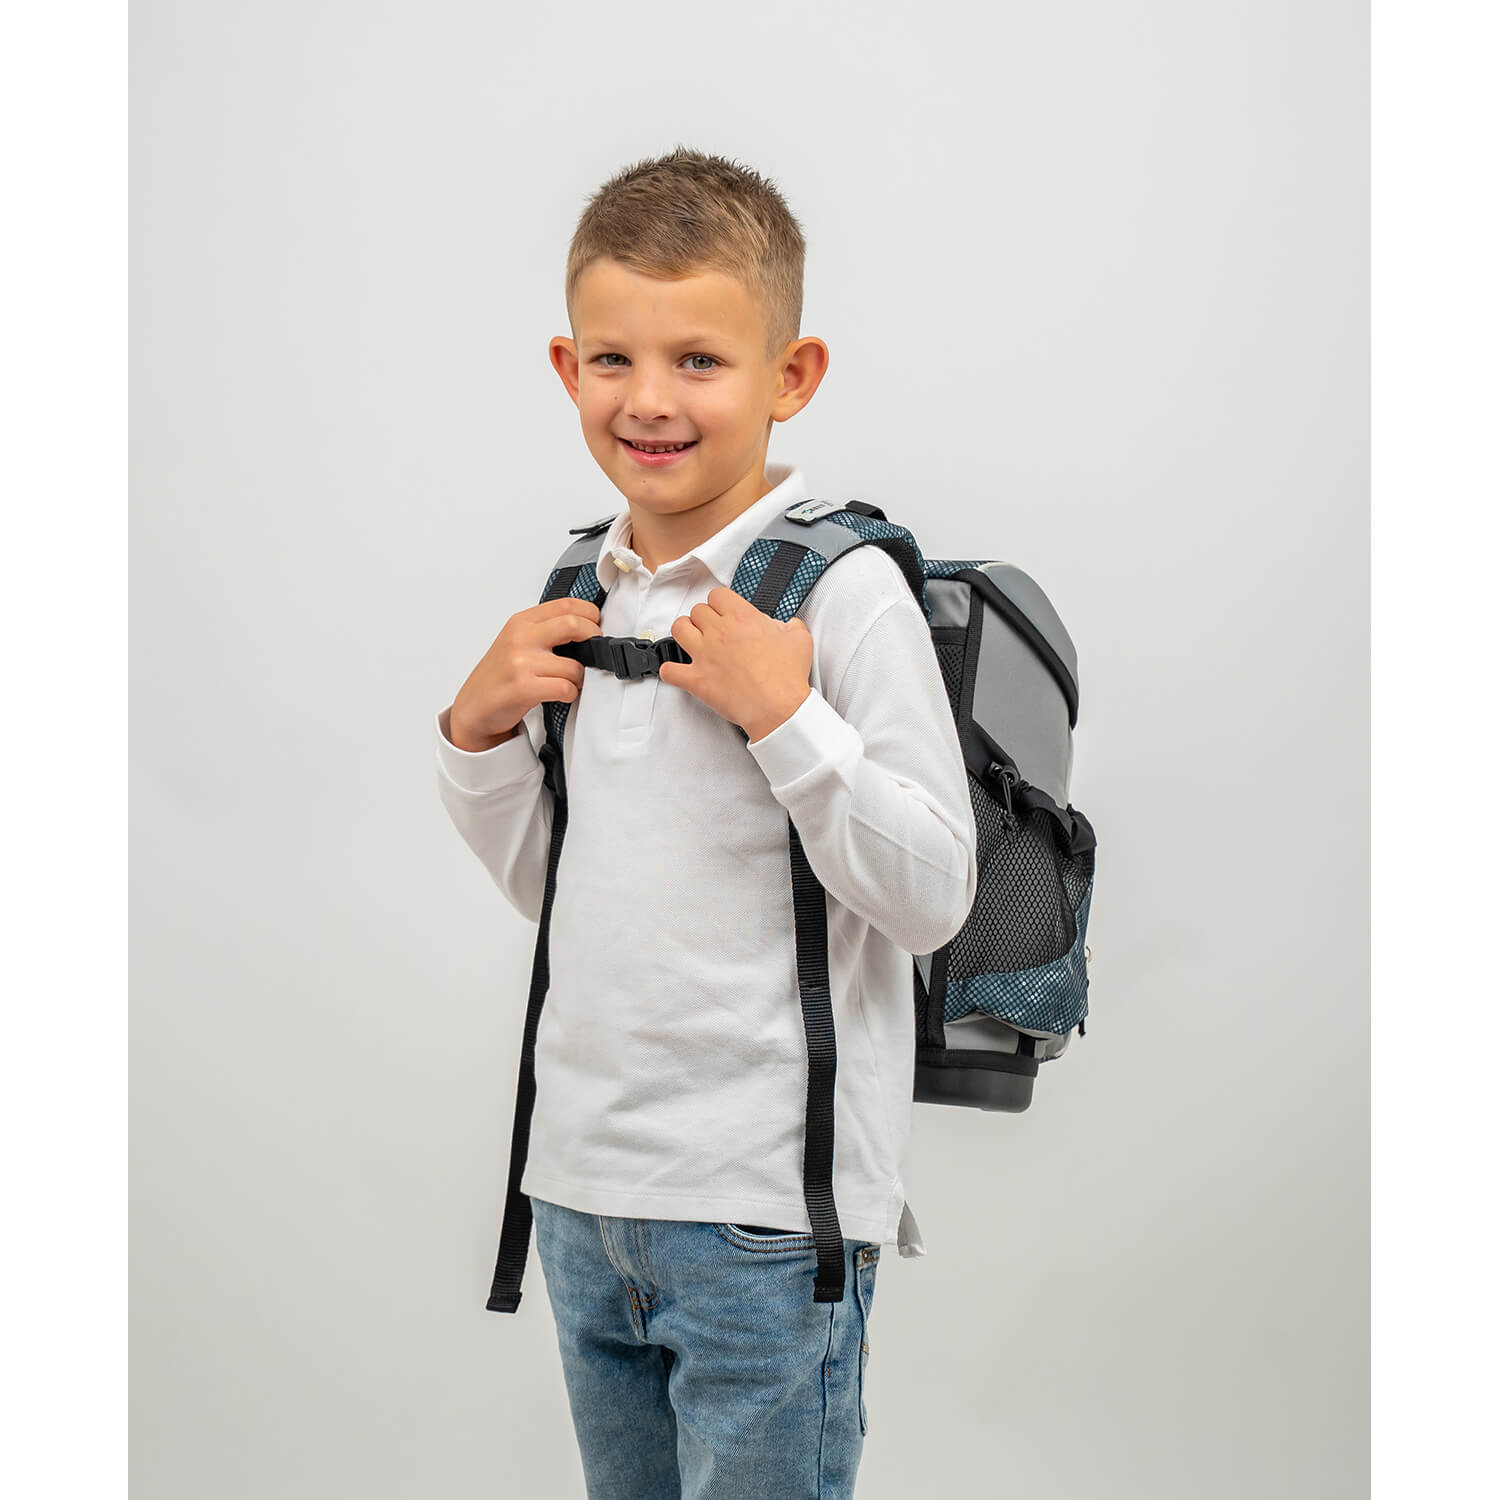 Mini-Fit Red Dots schoolbag set 4 pcs